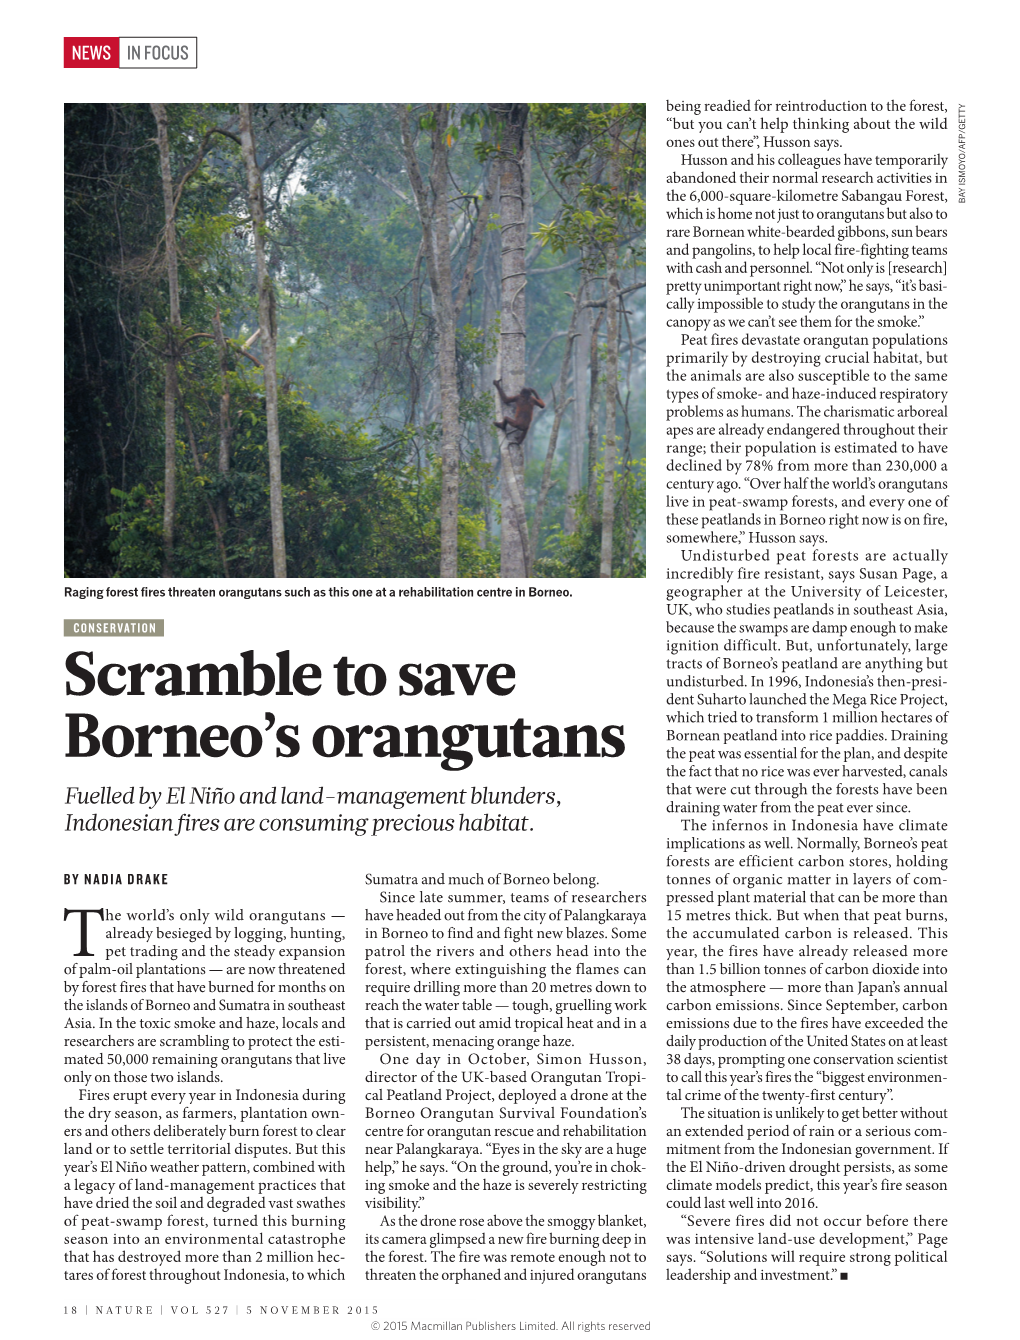 Scramble to Save Borneo's Orangutans